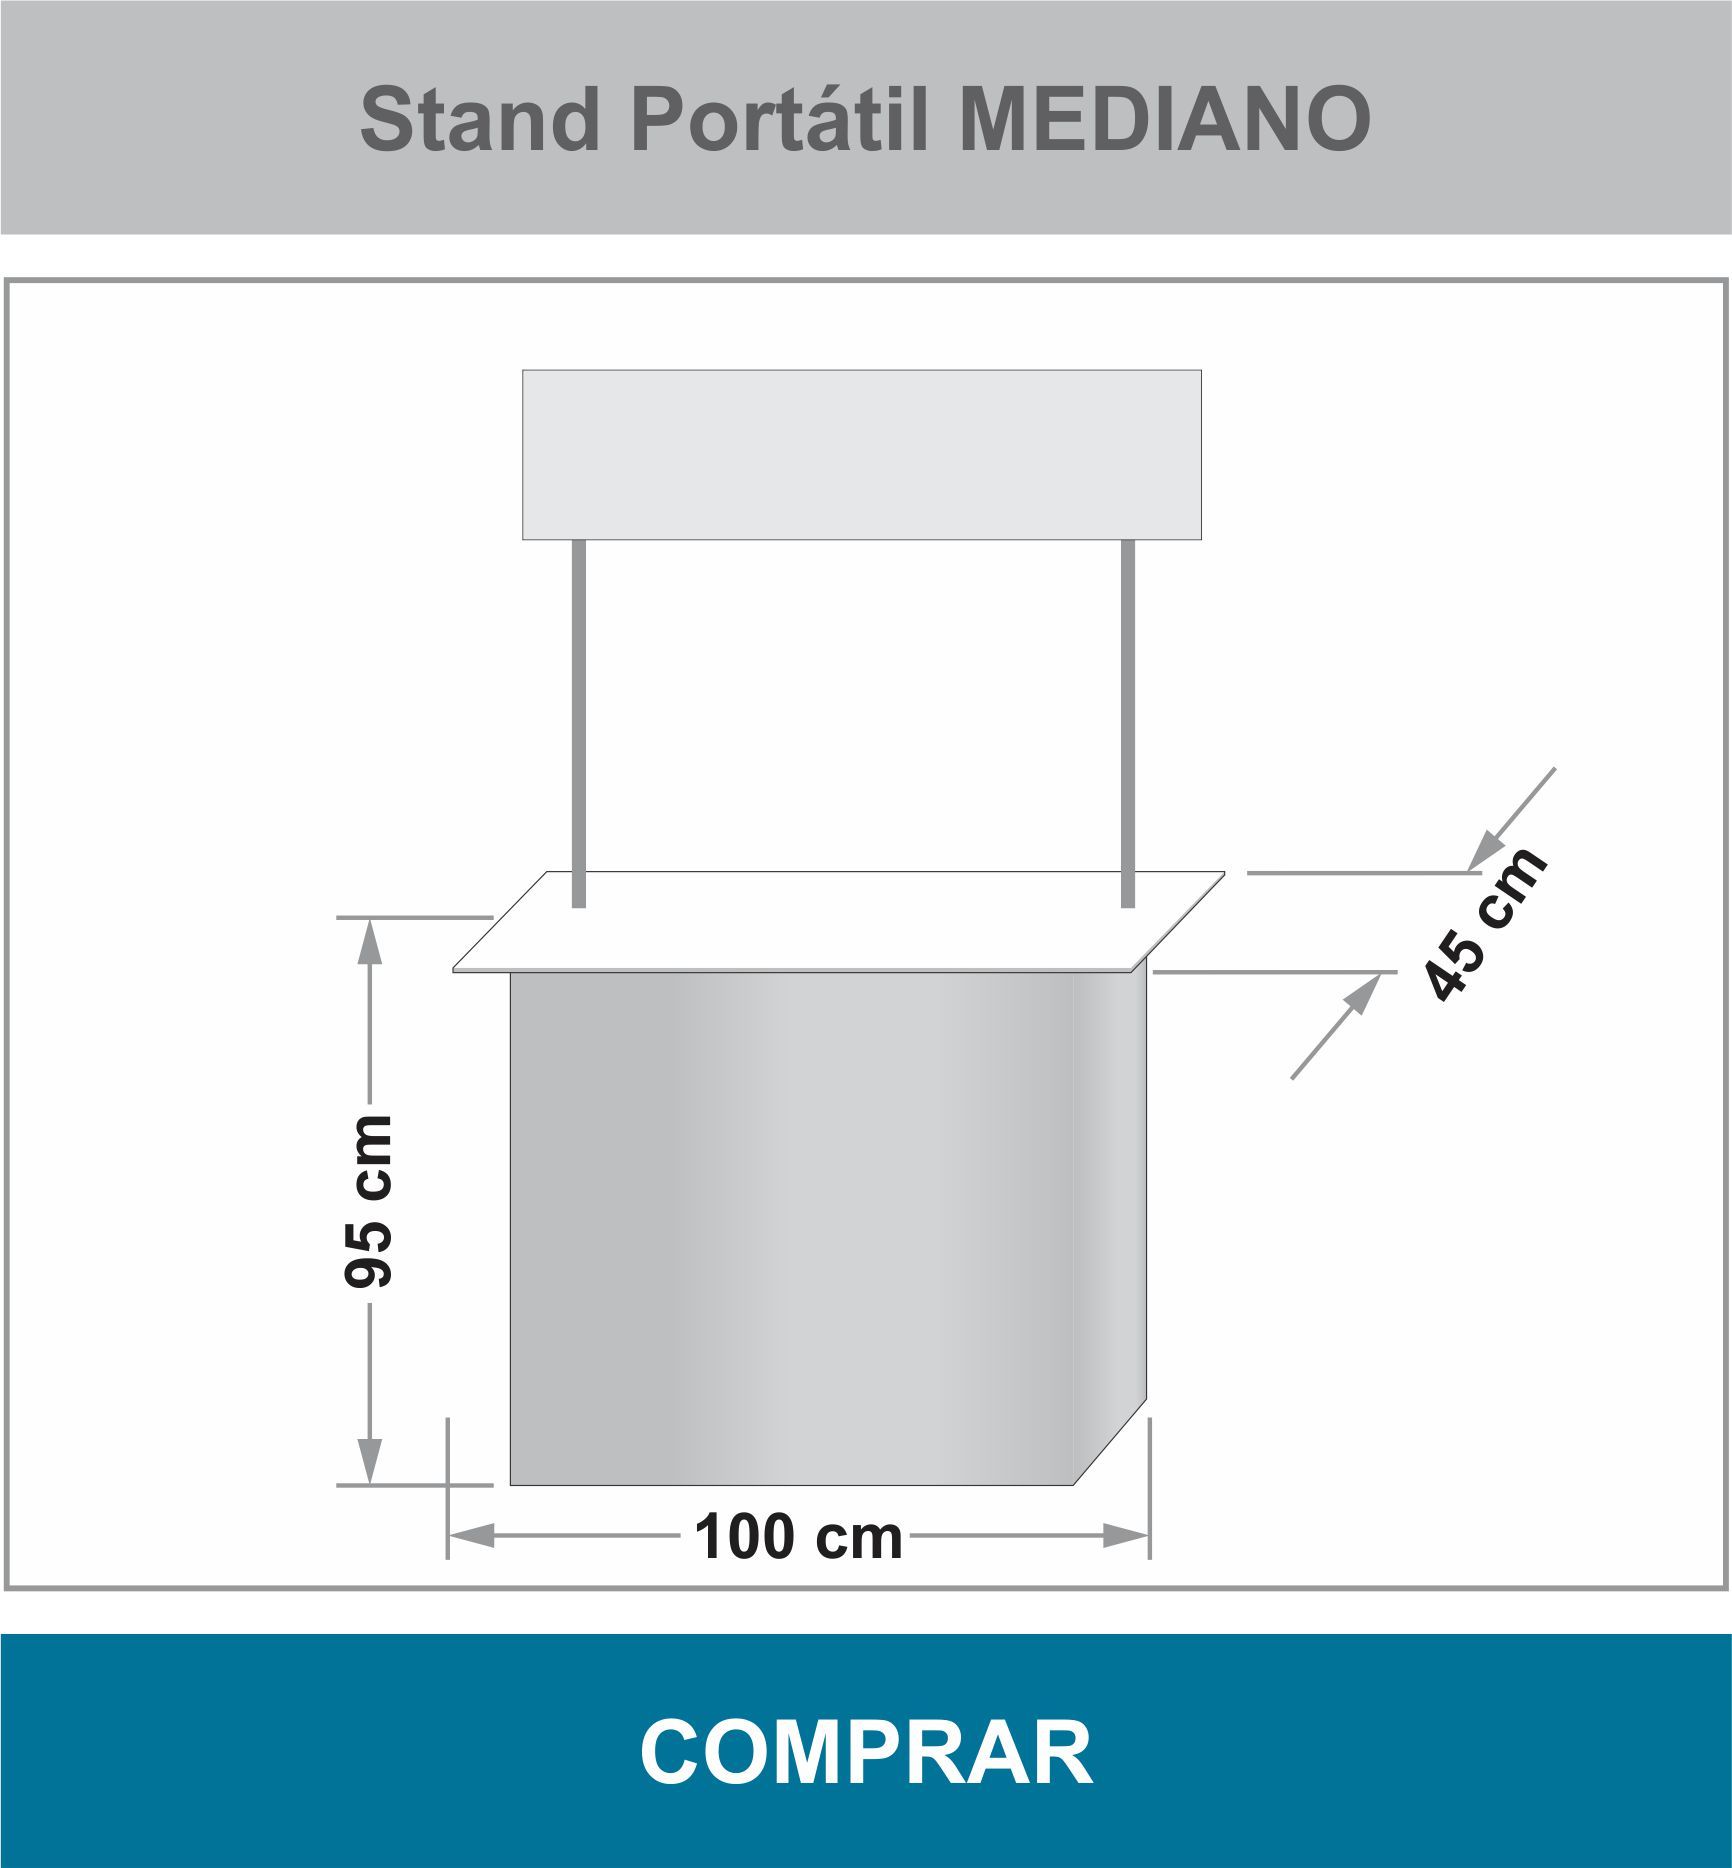 Stand Portátil Mediano